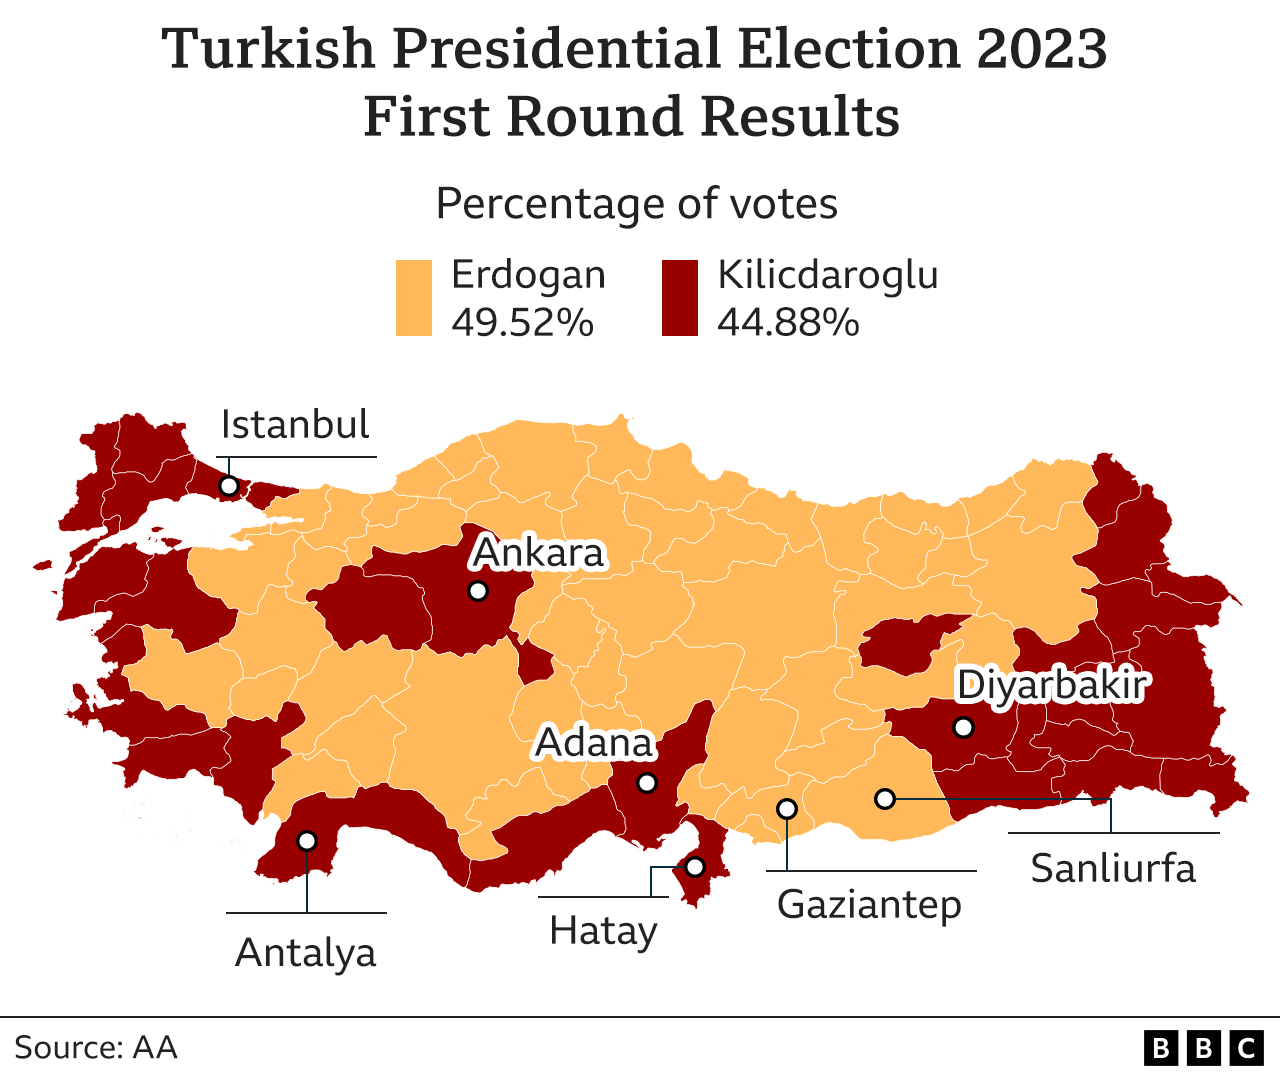 نقشے میں ترکی کے صدارتی انتخابات کے پہلے مرحلے کے ووٹوں کا فیصد دکھایا گیا ہے